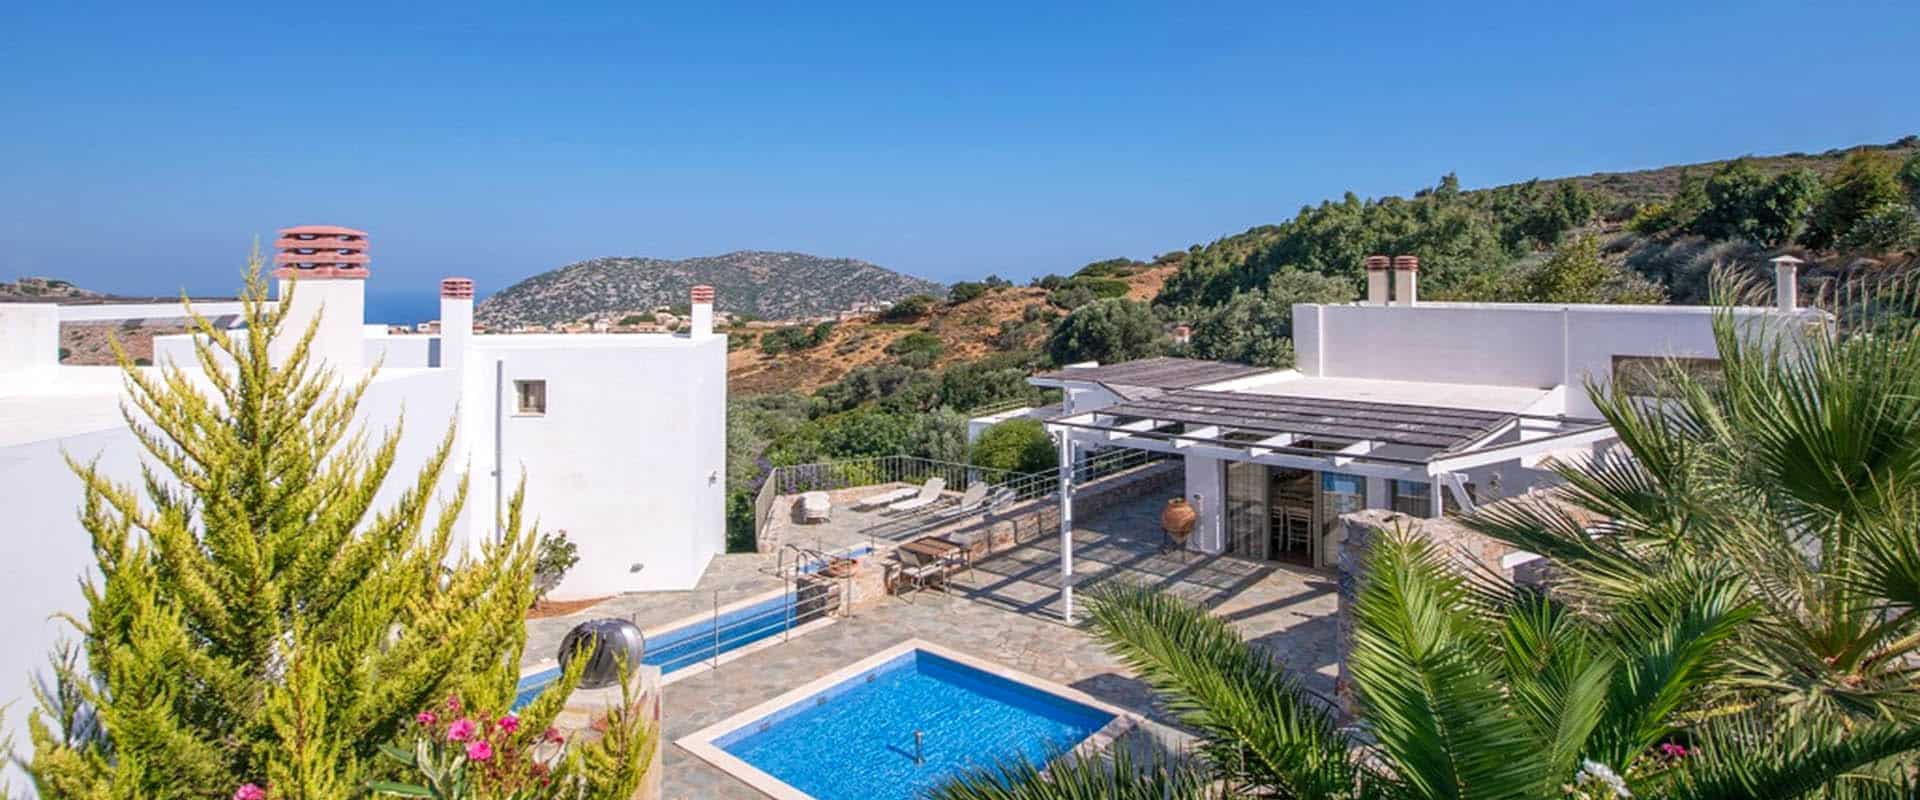 ecoturismo vacanza hotel turismo sostenibile Creta Grecia